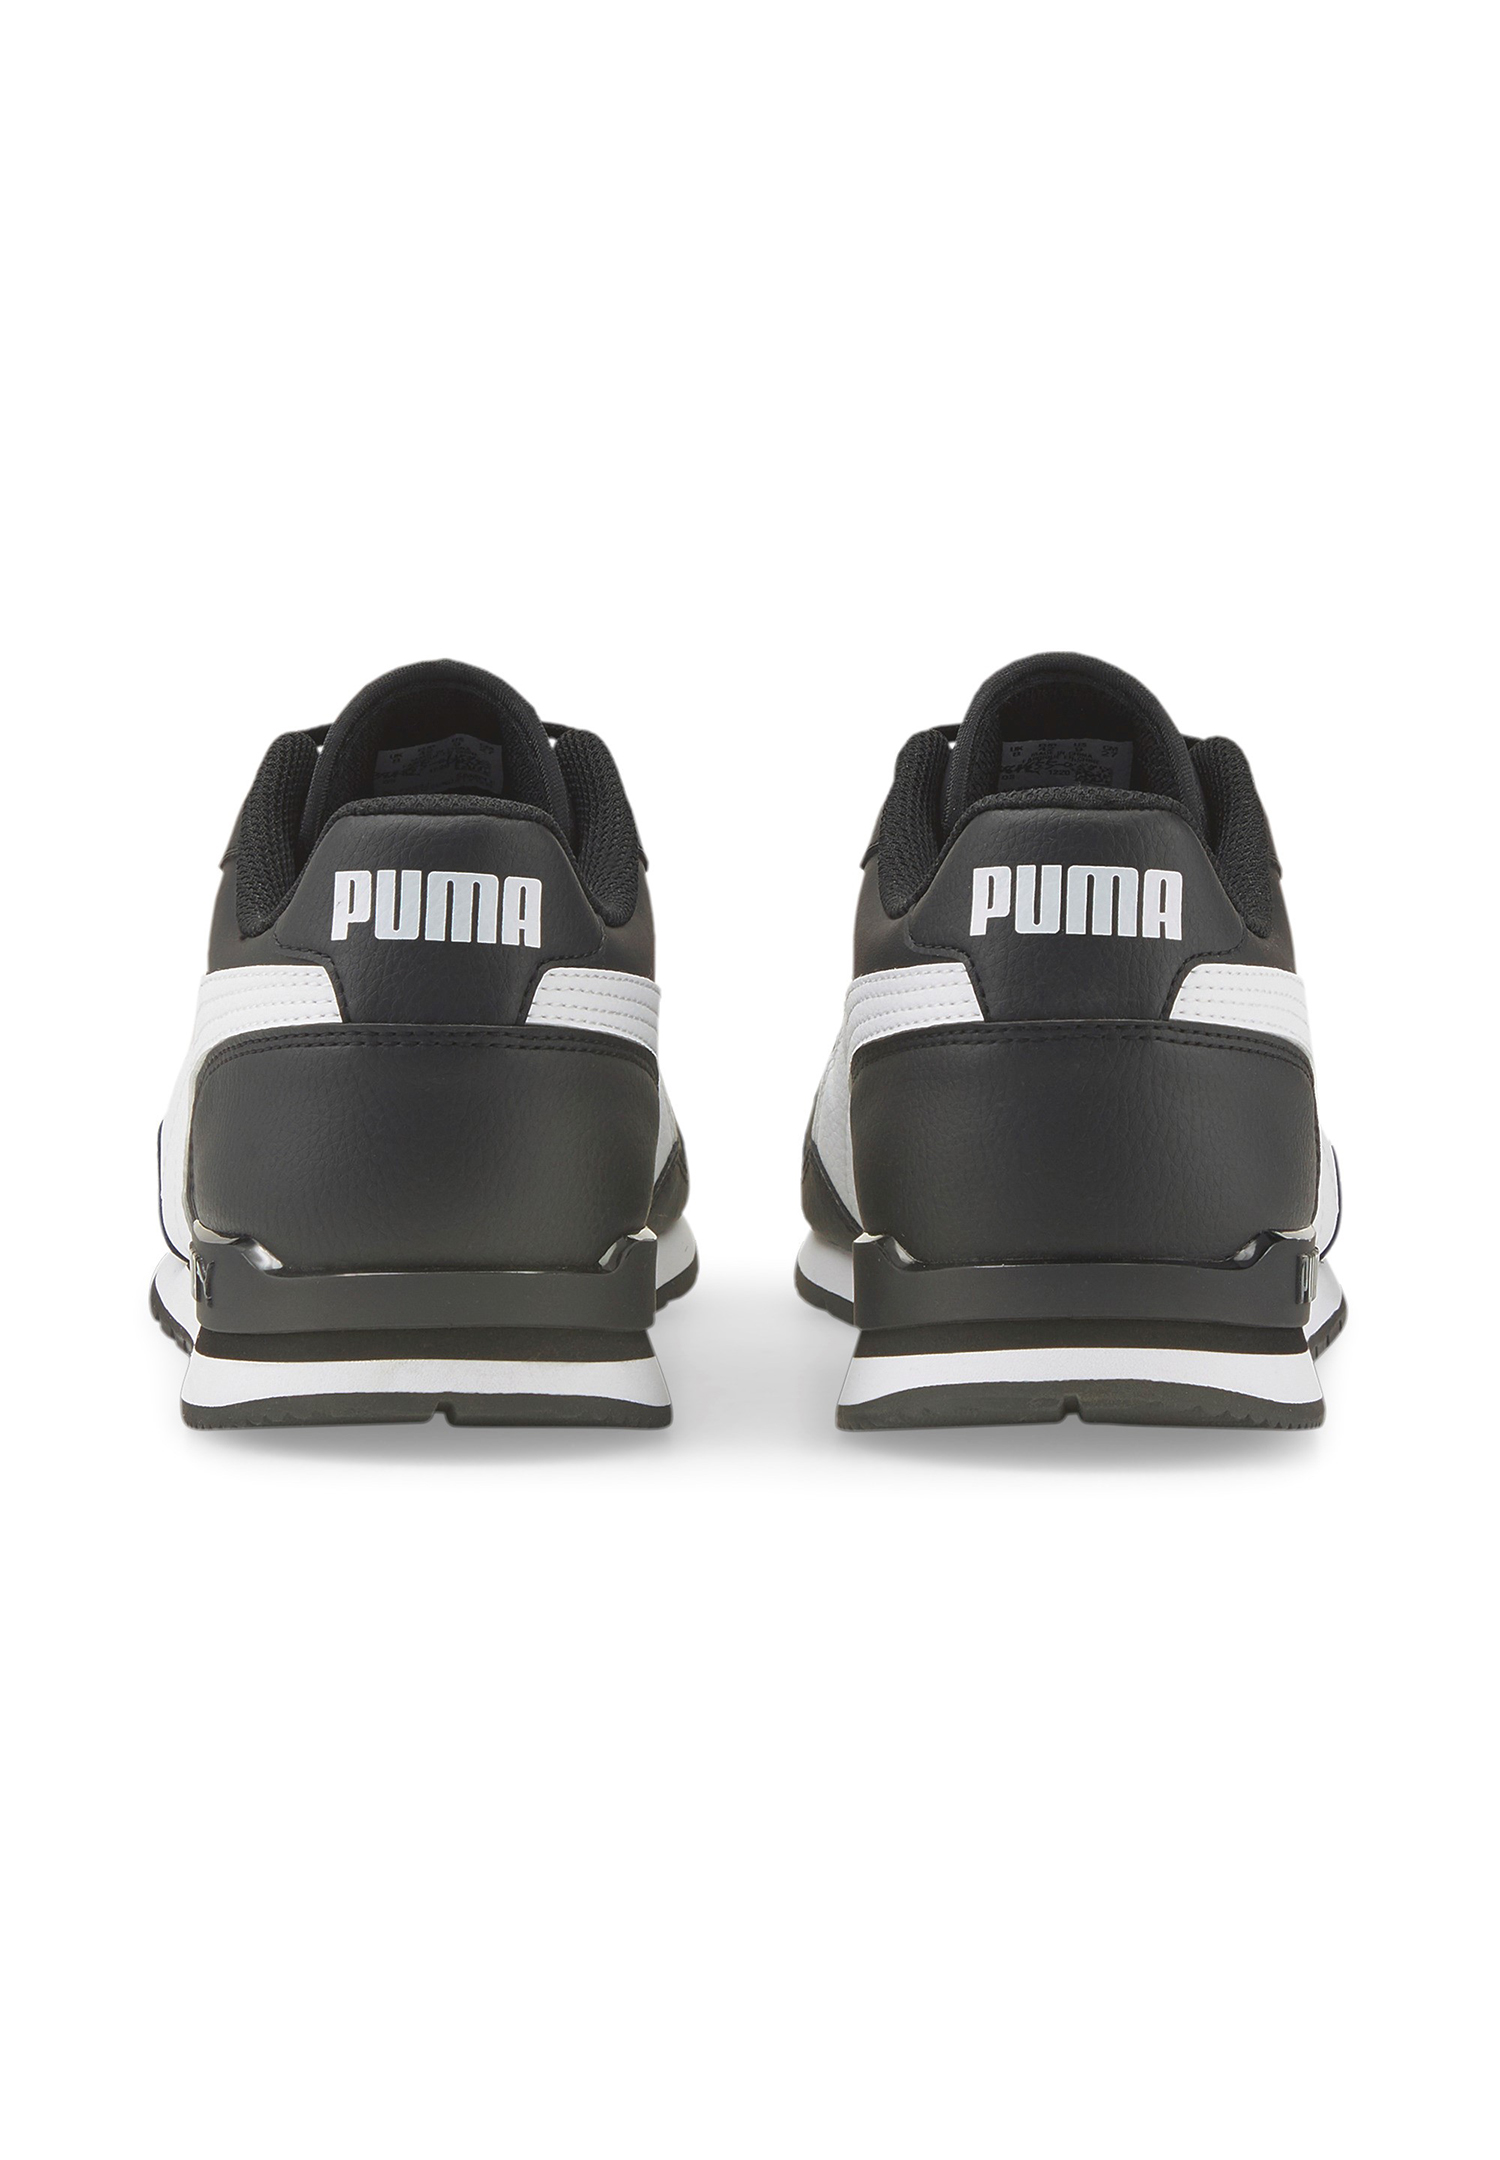 Puma ST Runner v3 Full L Unisex Sneaker Turnschuhe 384855 06 schwarz/weiss